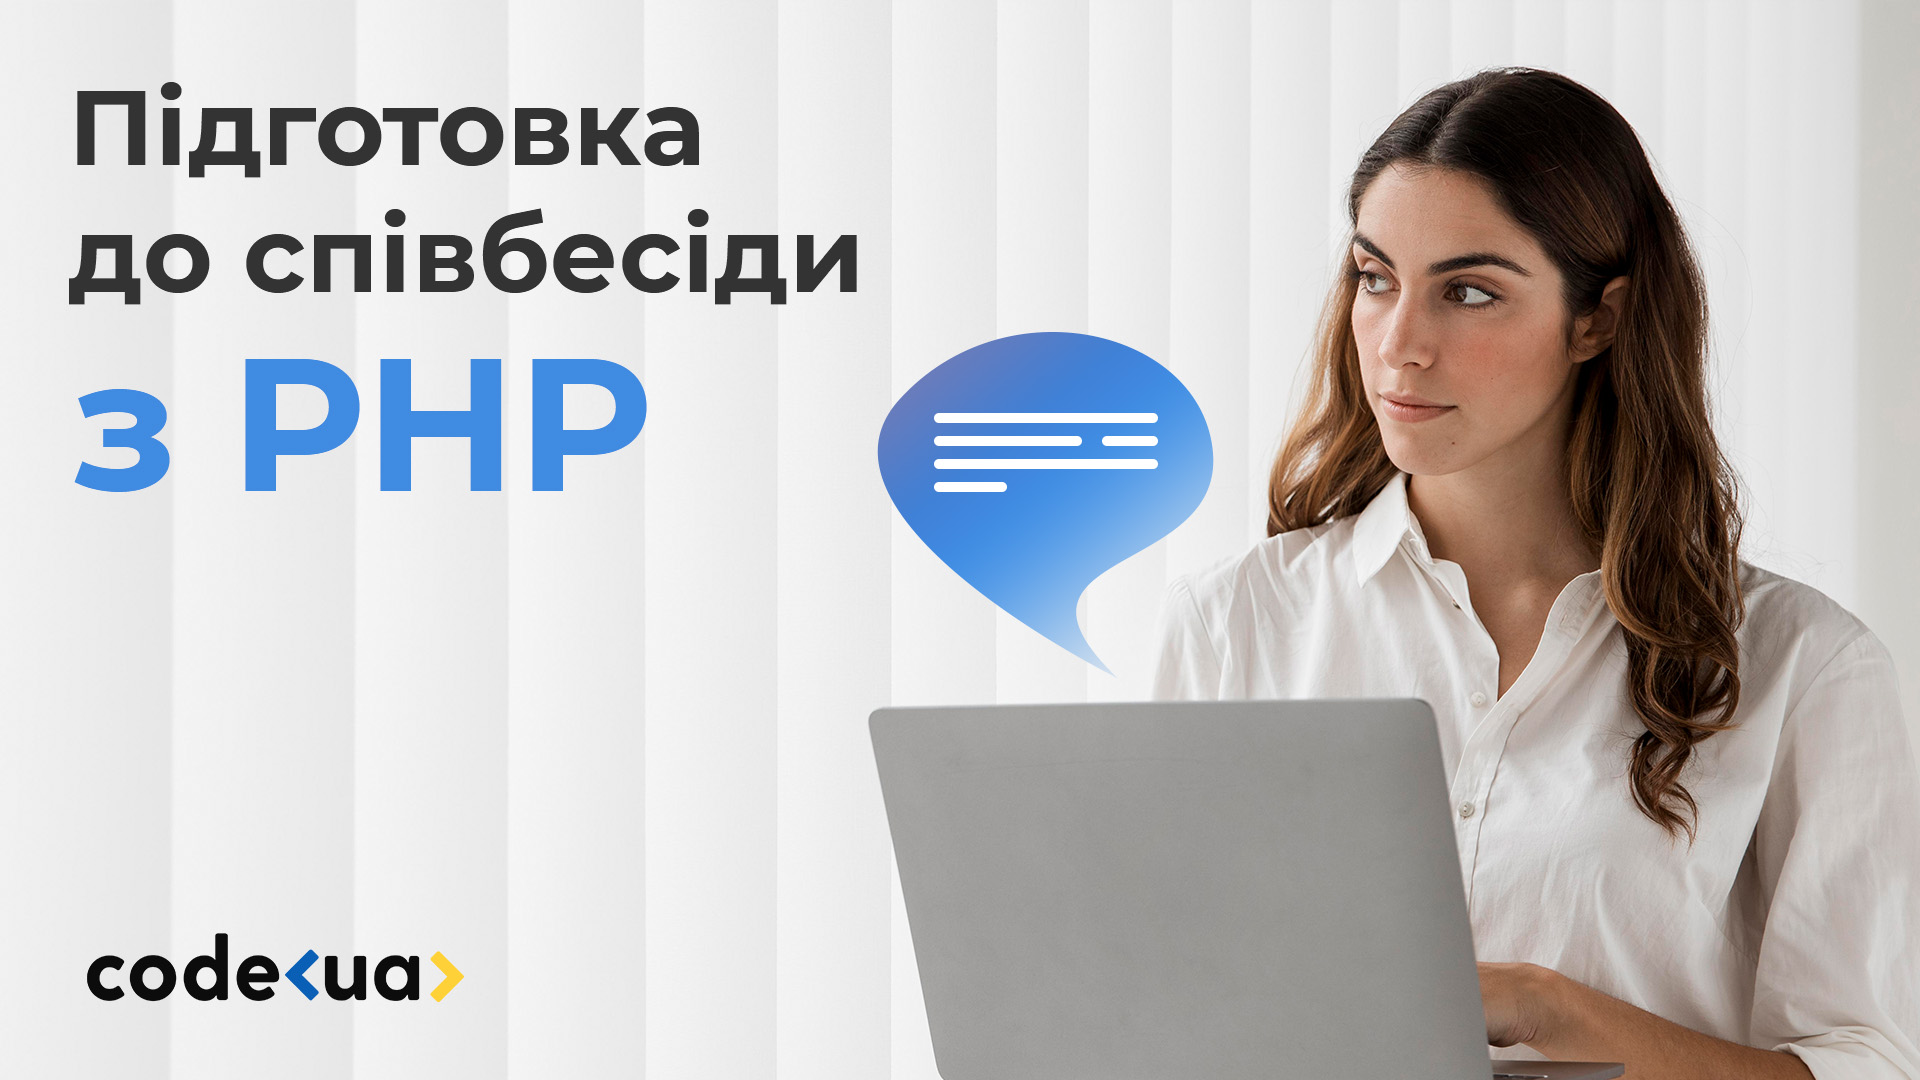  Підготовка до співбесіди з PHP — запитання та відповіді